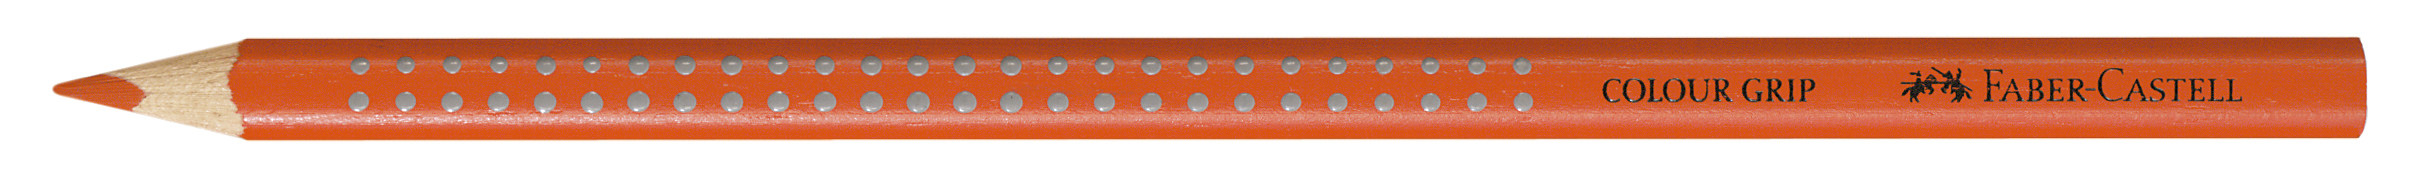 FABER-CASTELL Crayon de couleur Colour Grip 112418 rouge